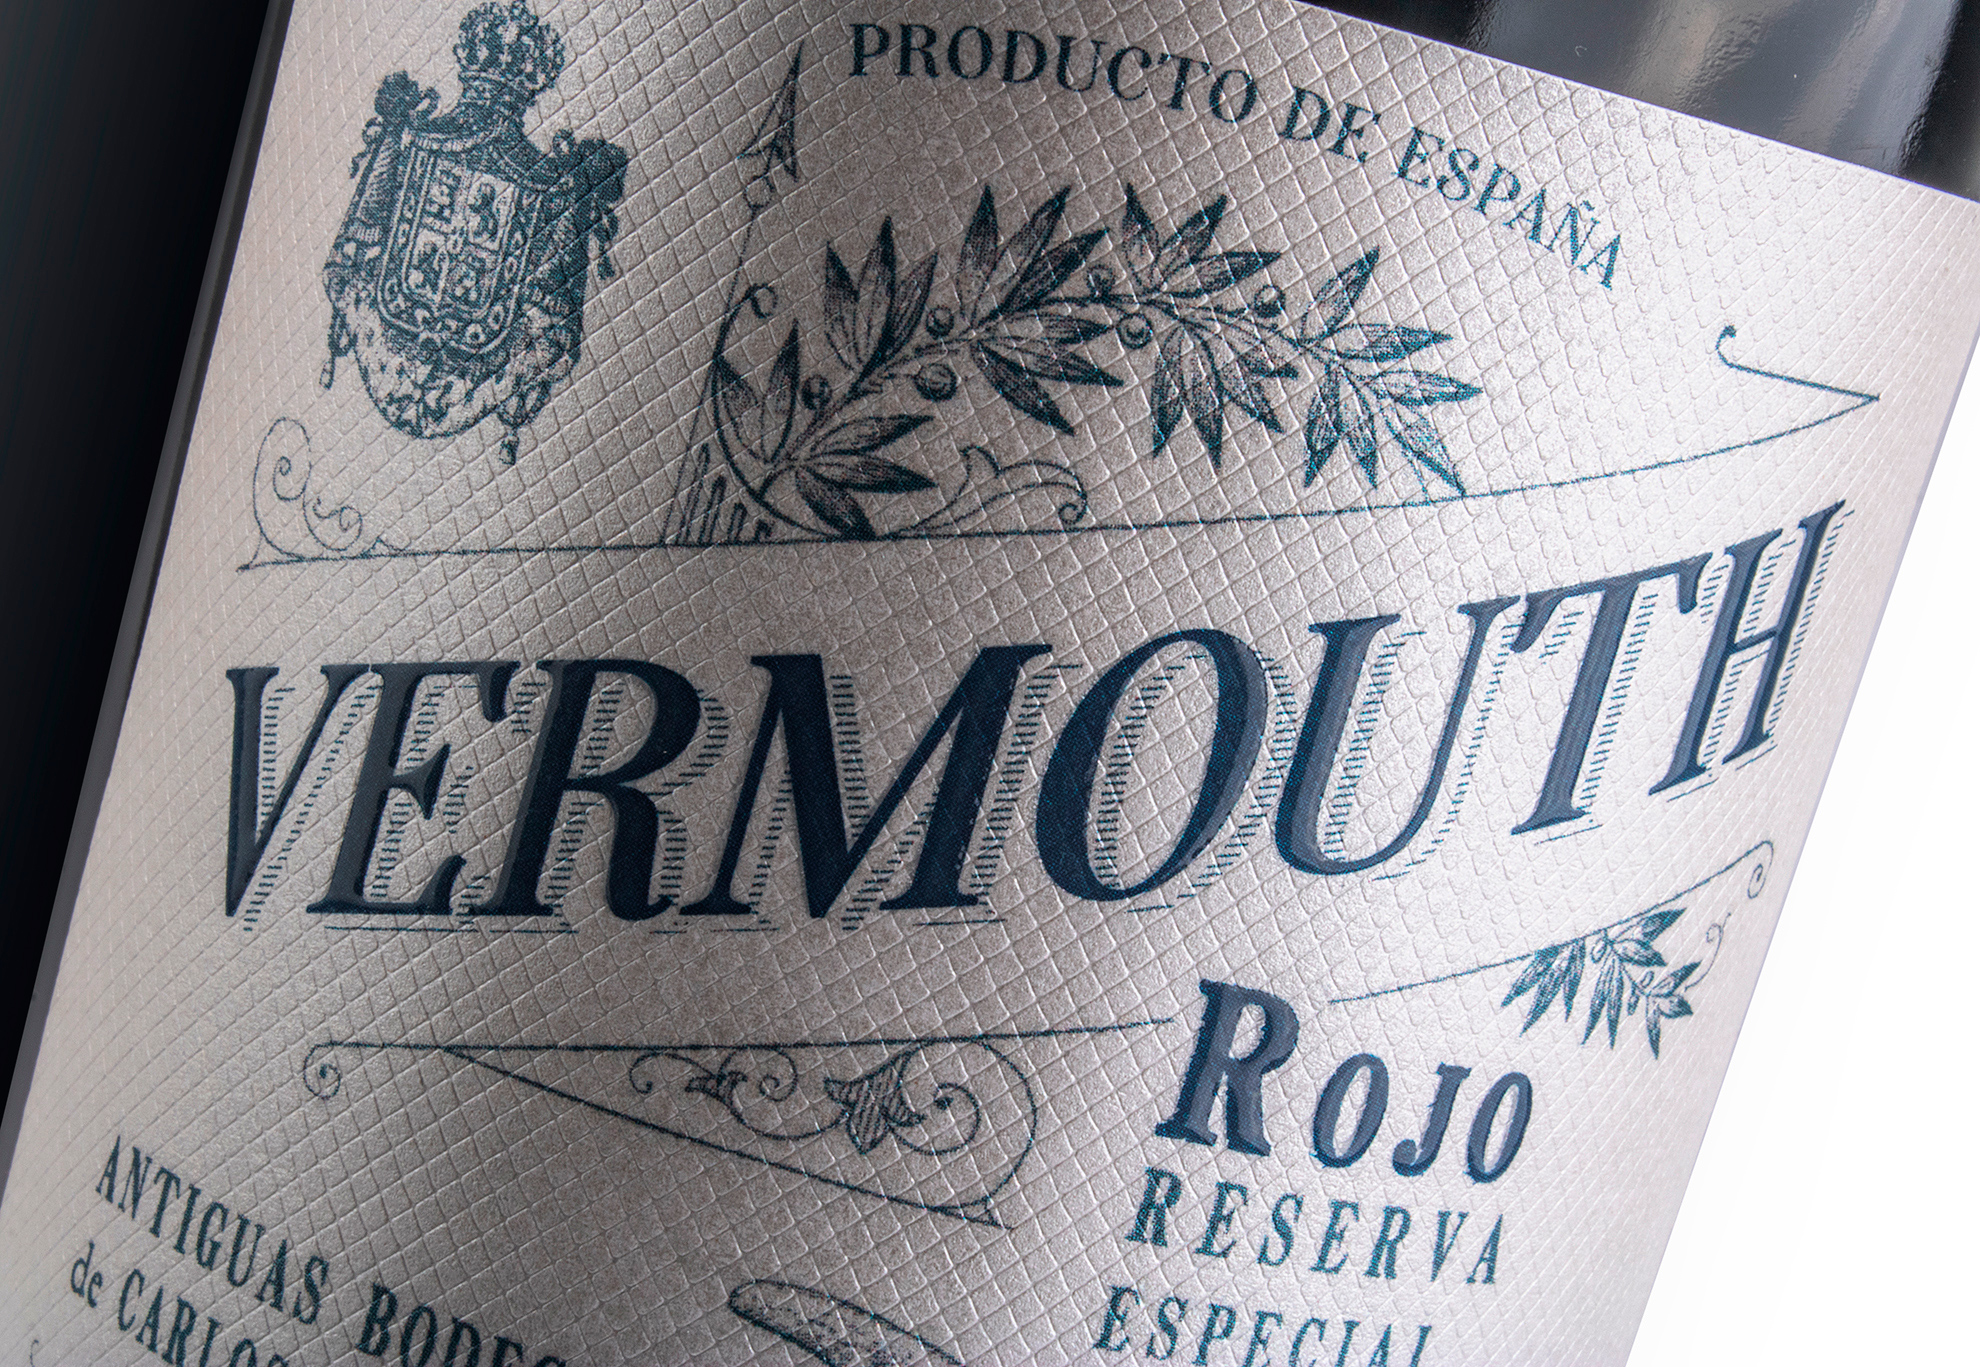 Vermouth Krauel rectyling de un clásico